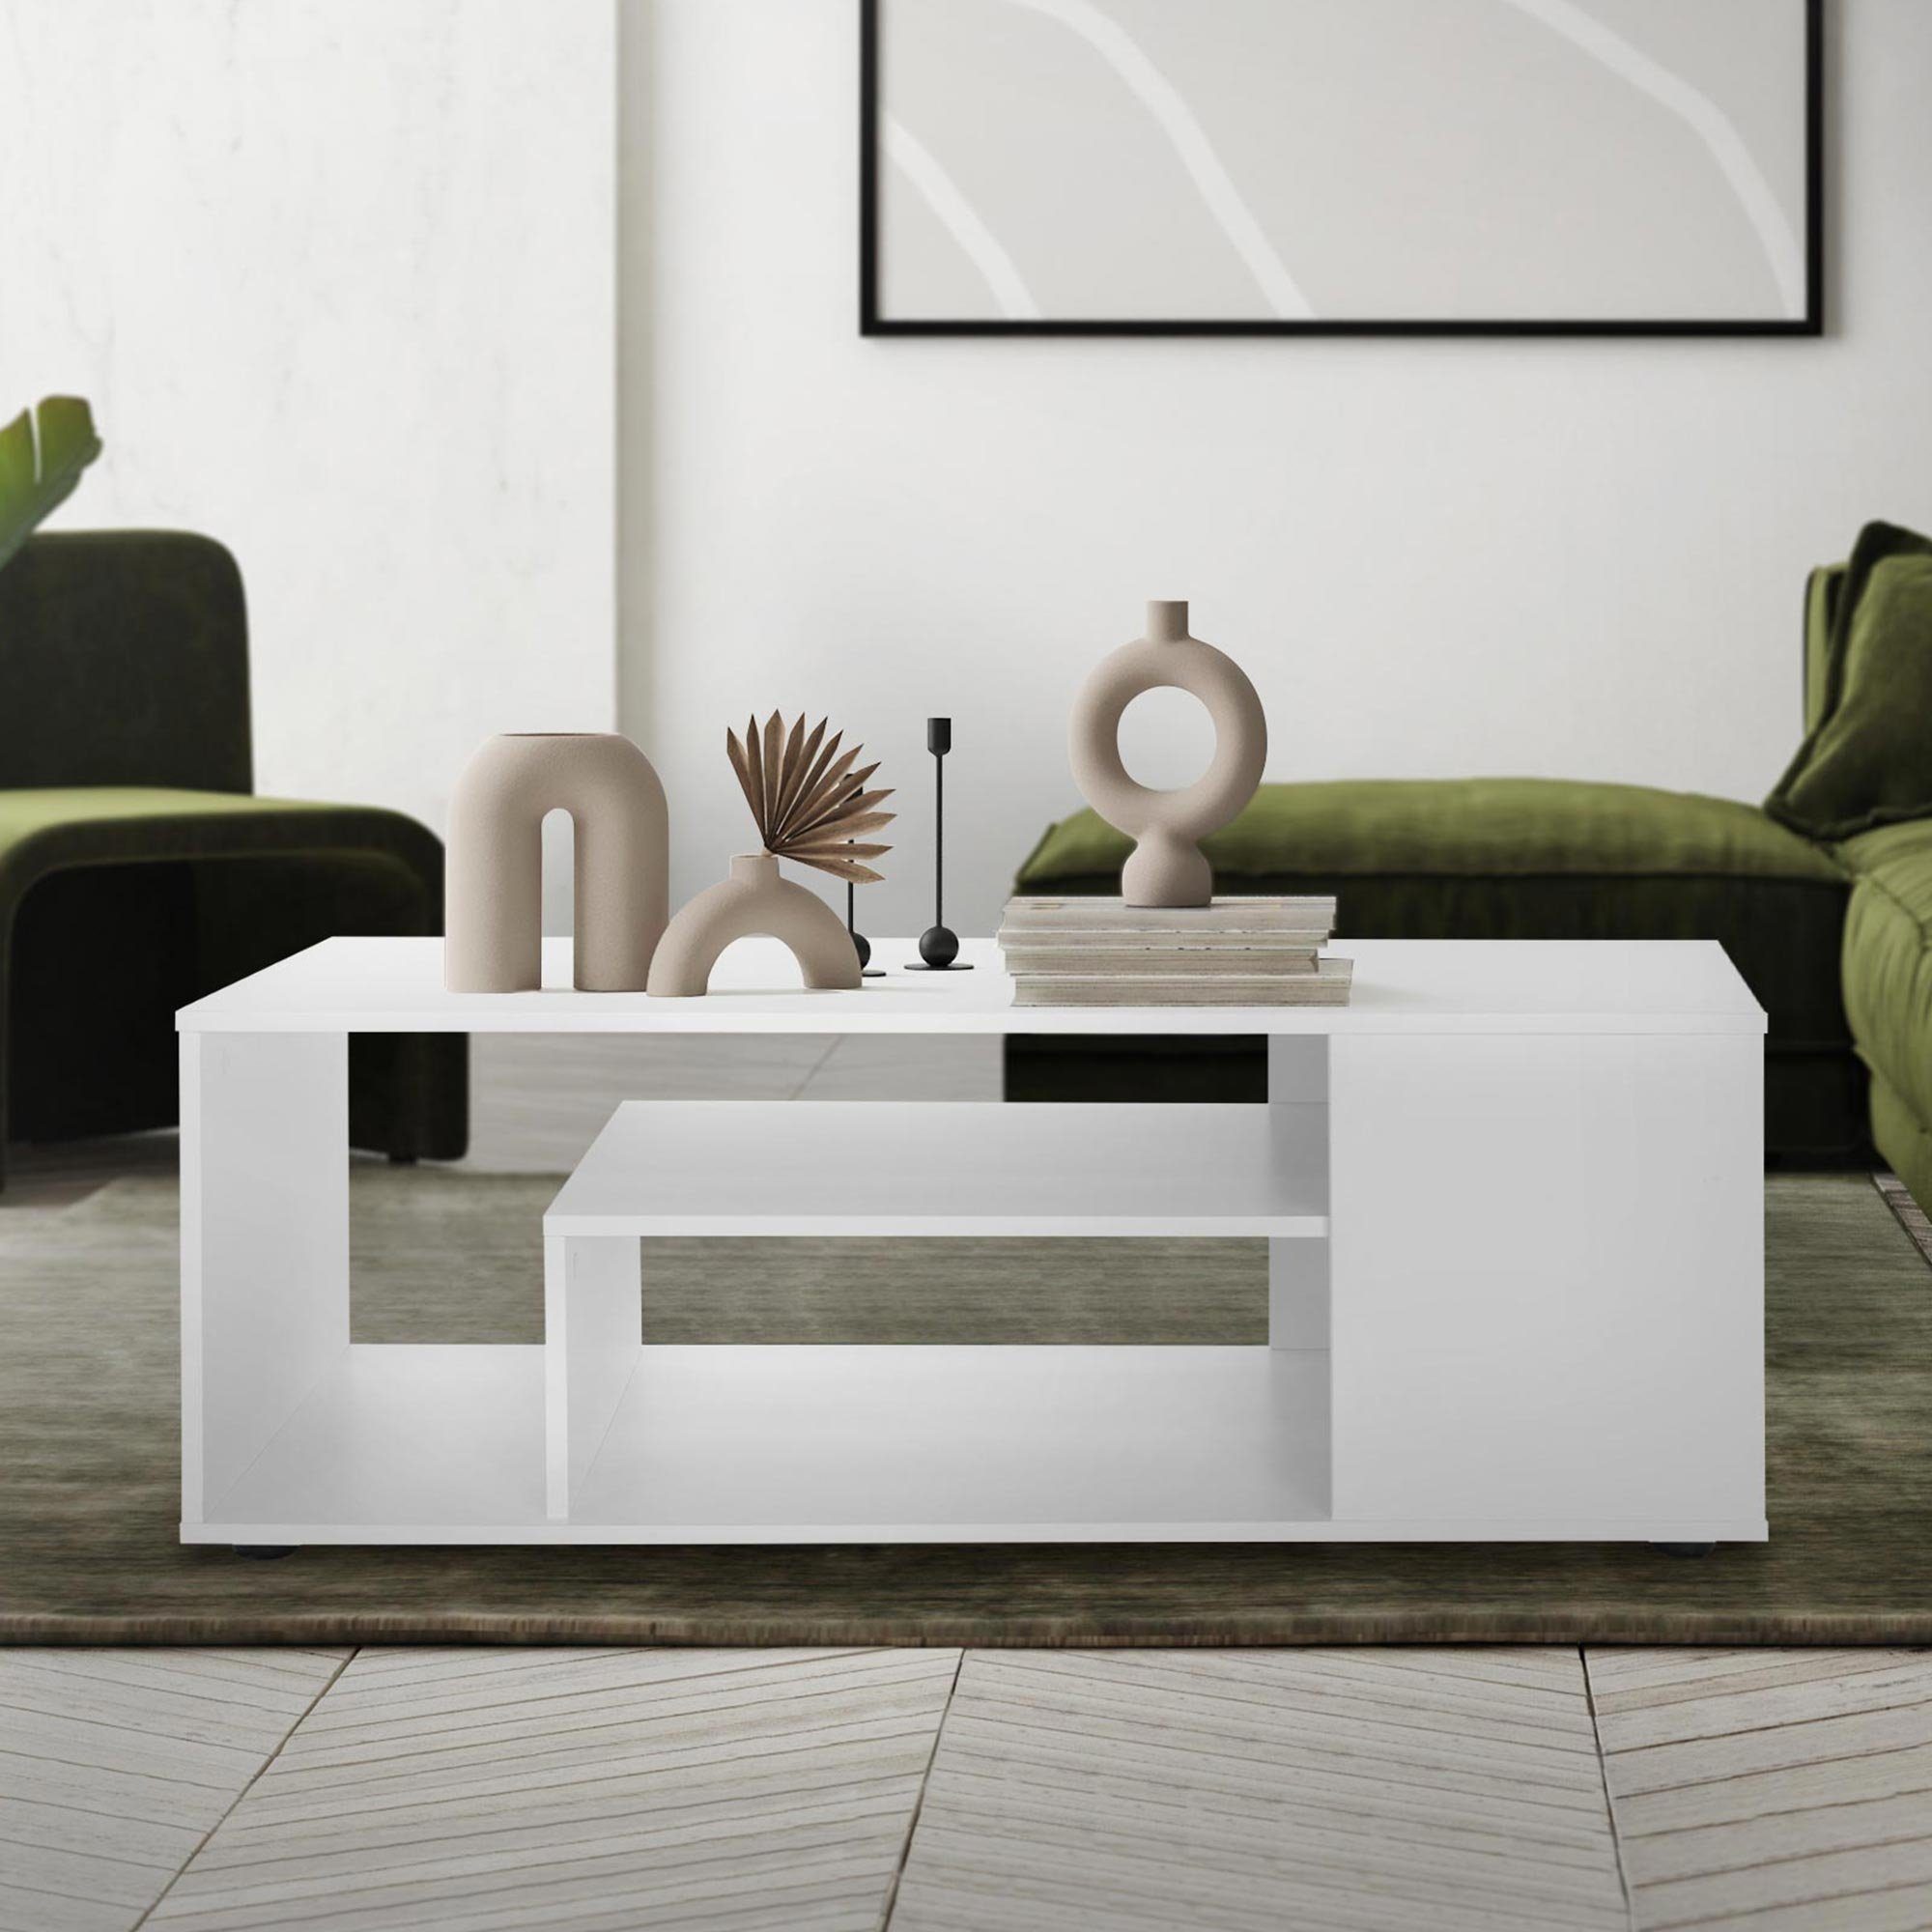 ML-DESIGN Couchtisch Wohnzimmertisch Sofatisch Beistelltisch Kaffeetisch Holztisch, Weiß 110x50x41cm Geräumig mit 4 Abstellflächen auf 3 Etagen